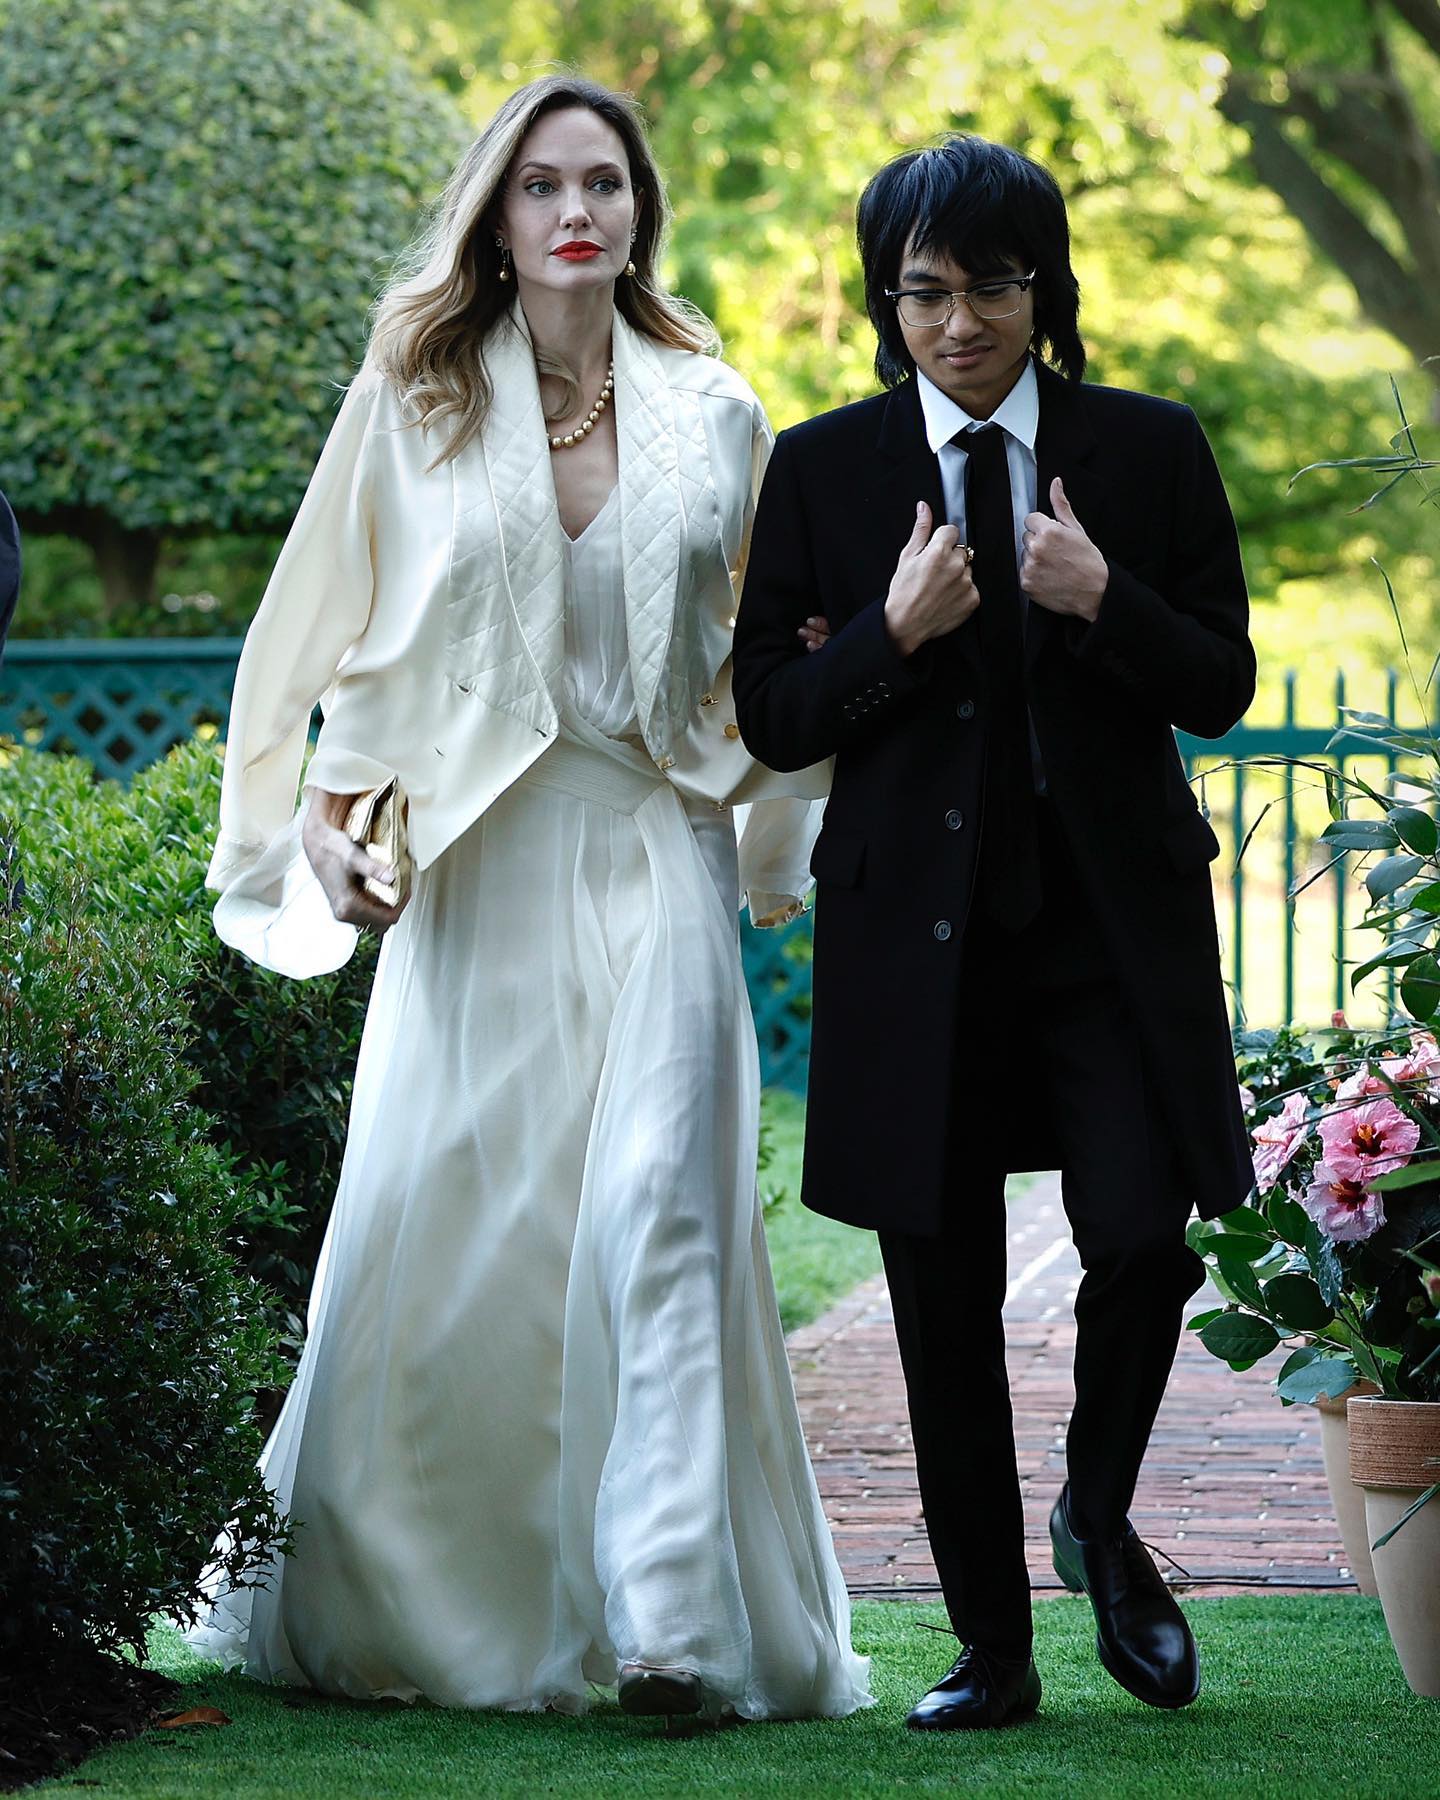 Як грецька богиня: Анджеліна Джолі у білій сукні з розрізами викликала фурор рідким виходом у світ